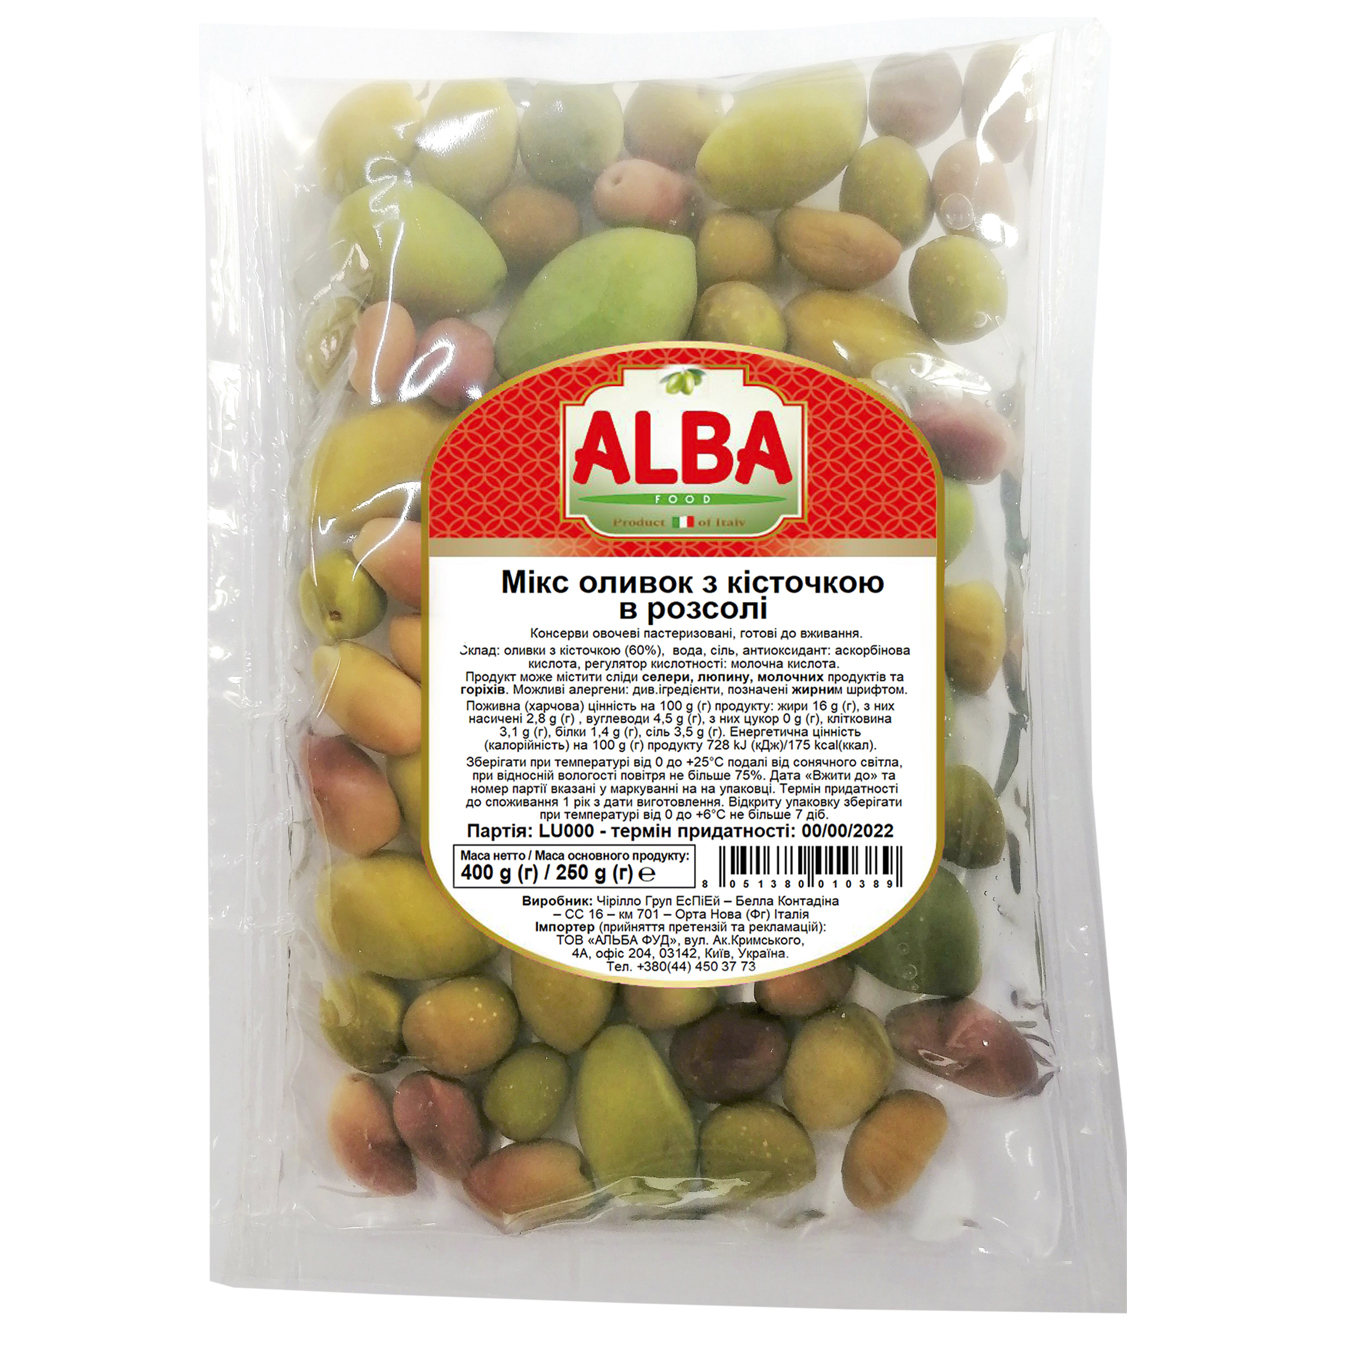 Оливки Alba Food микс с косточкой 400г